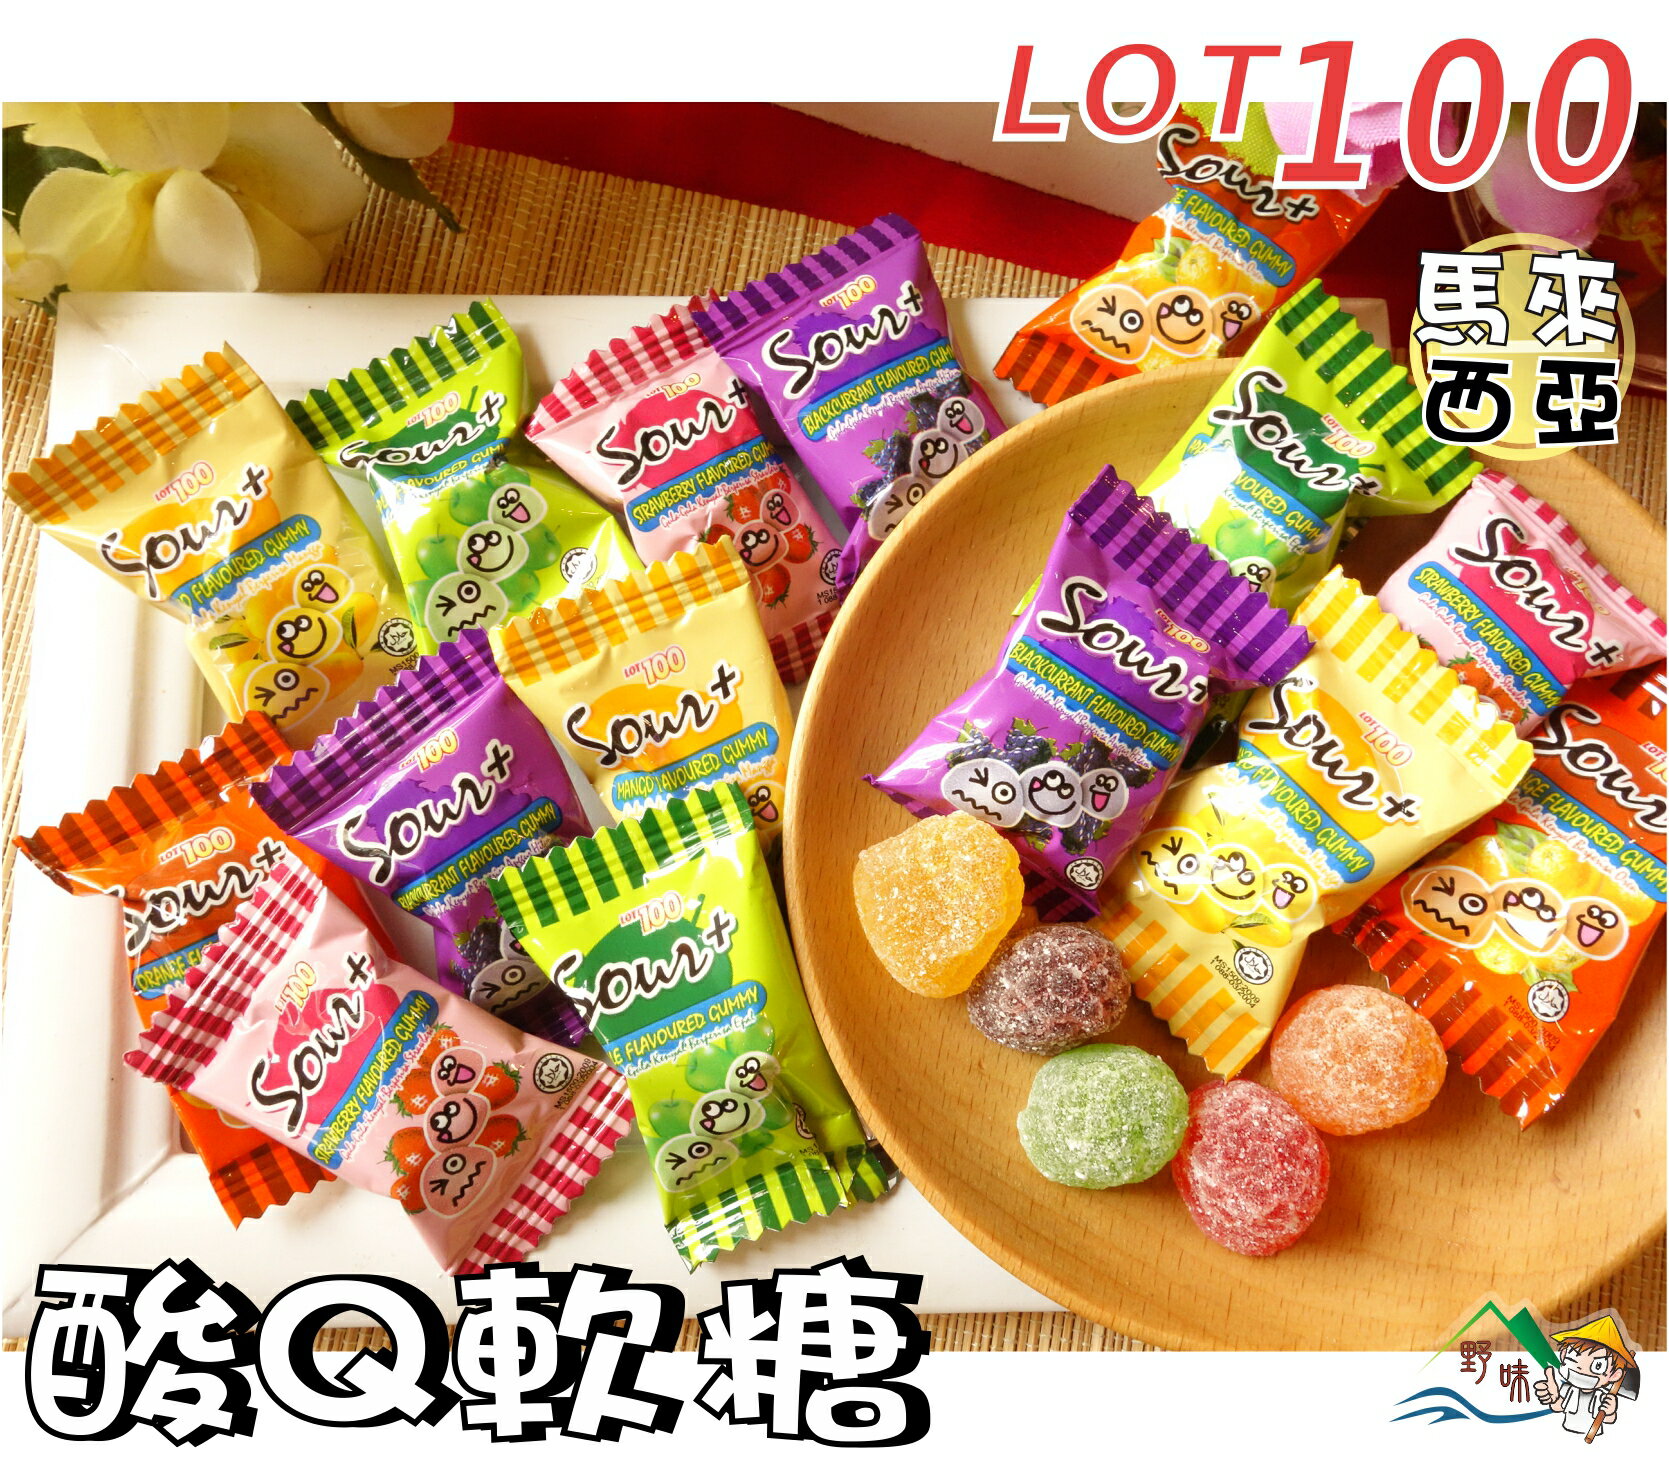 【野味食品】LOT100份綜合口味超酸QQ軟糖(120g/包,250g/包,馬來西亞進口,桃園實體店面出貨),一百份軟糖